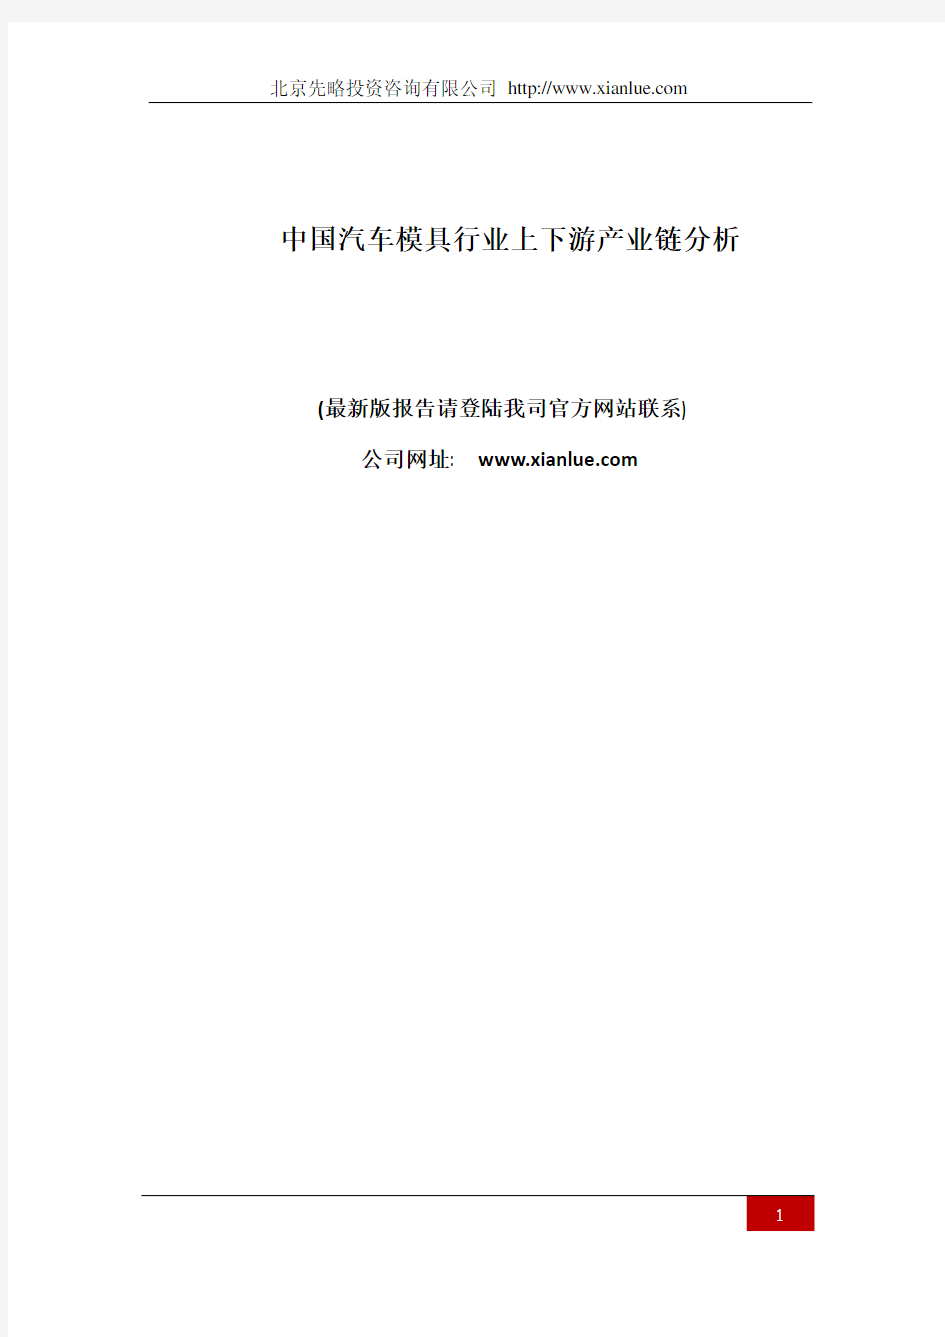 中国汽车模具行业上下游产业链分析(报告精选)